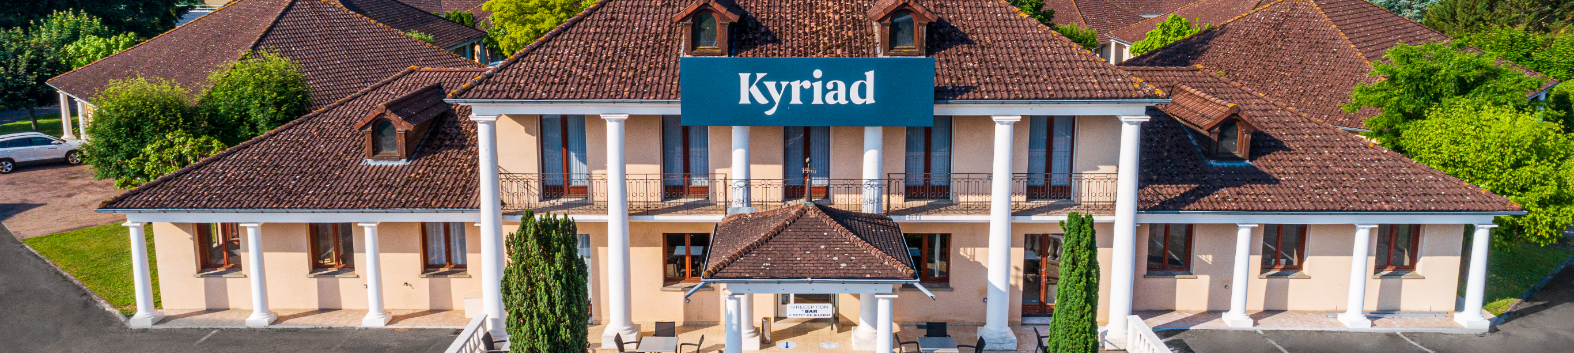 Hotel kyriad